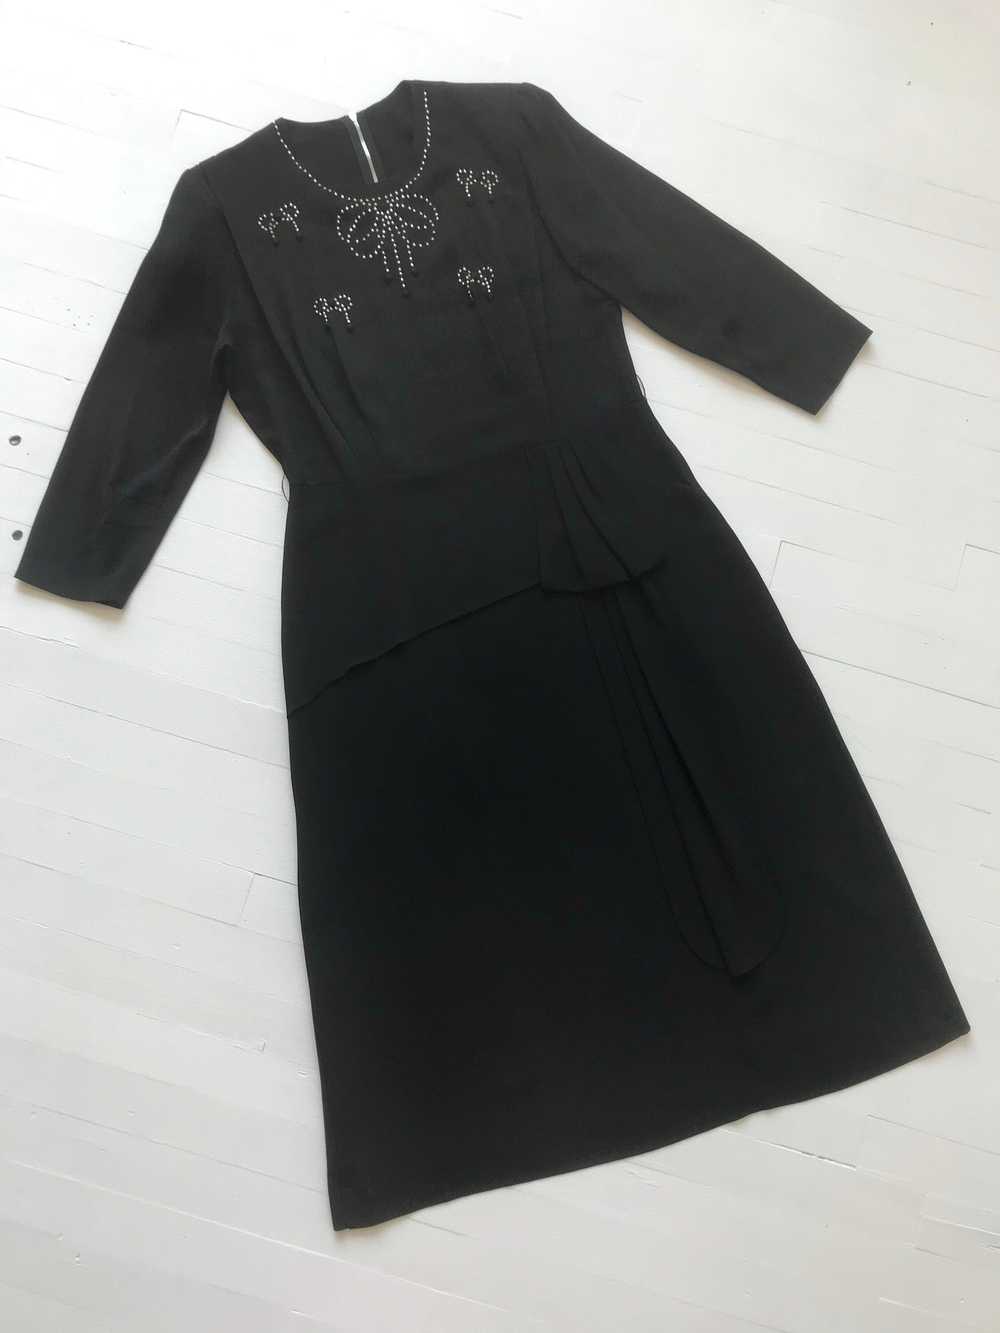 1940s Studded Black Crepe Rayon Dress - image 2